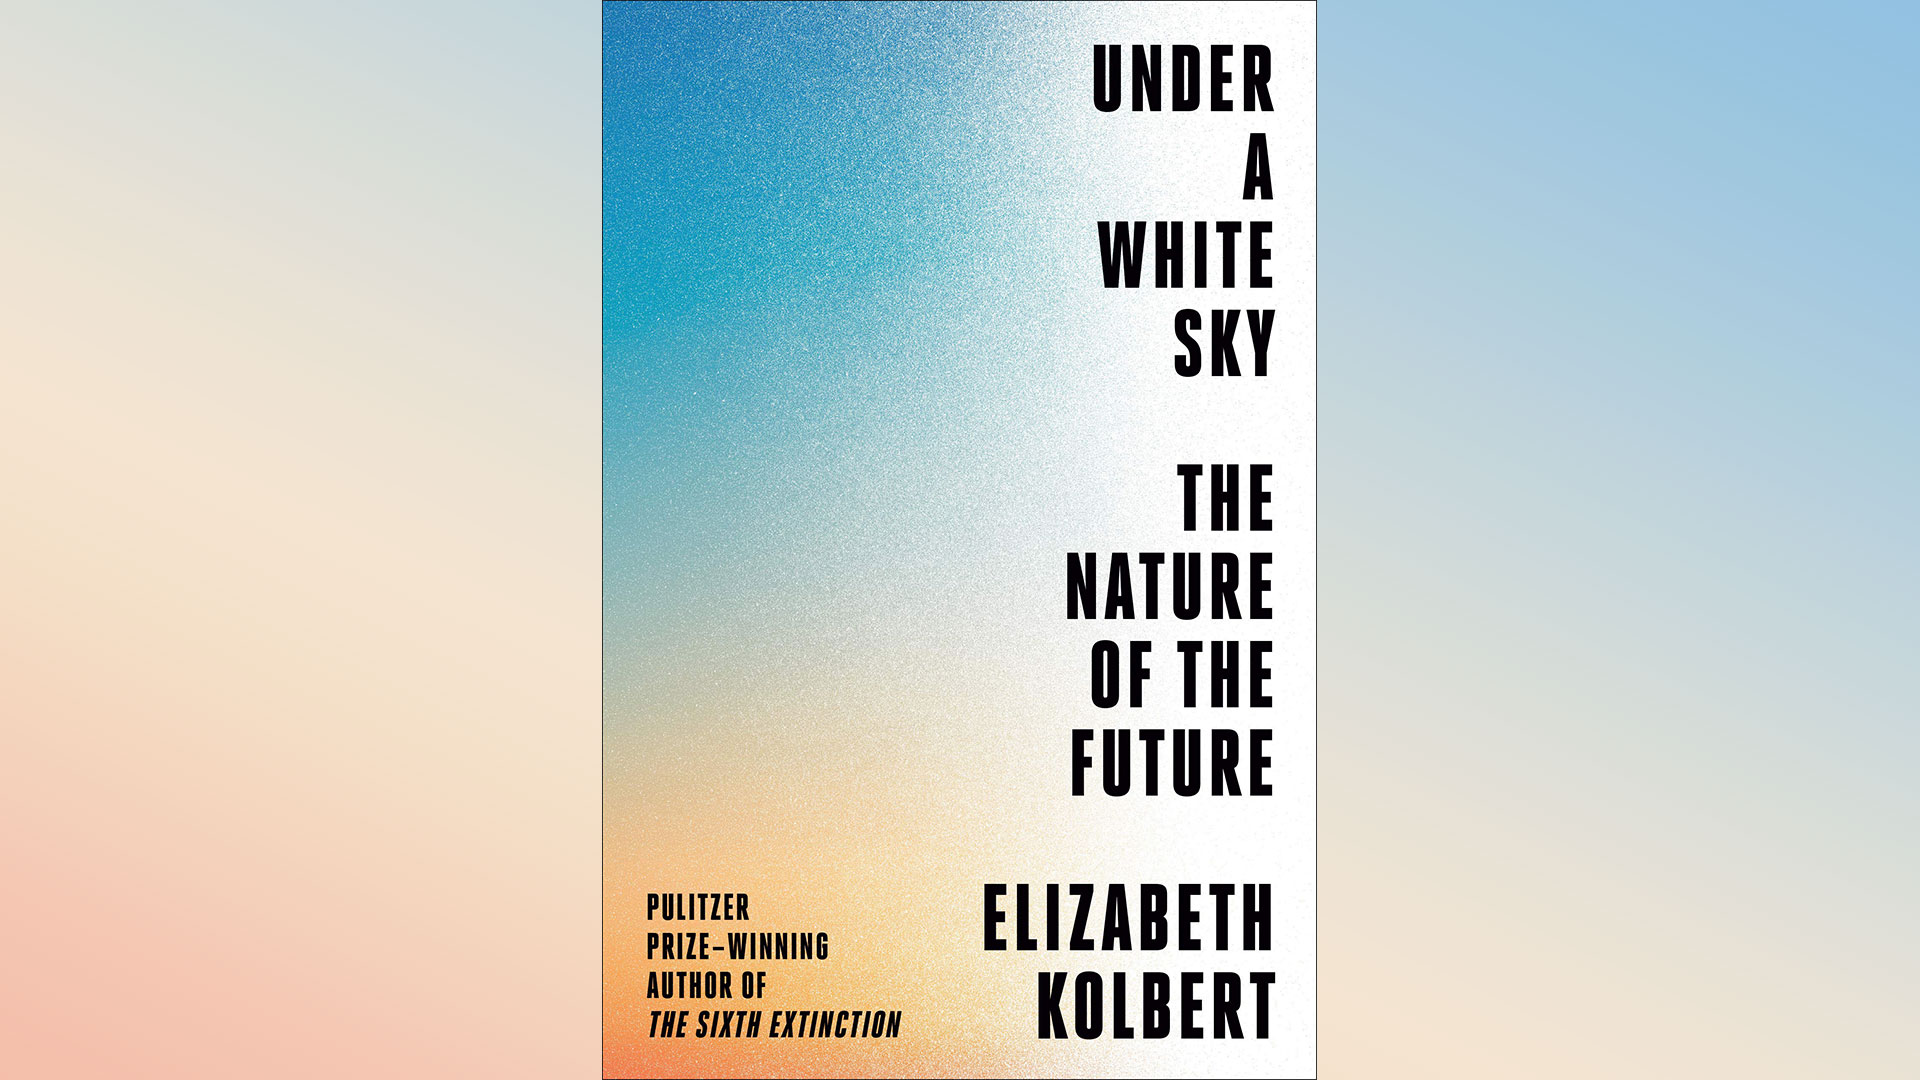 'Under a White Sky' by Elizabeth Kolbert